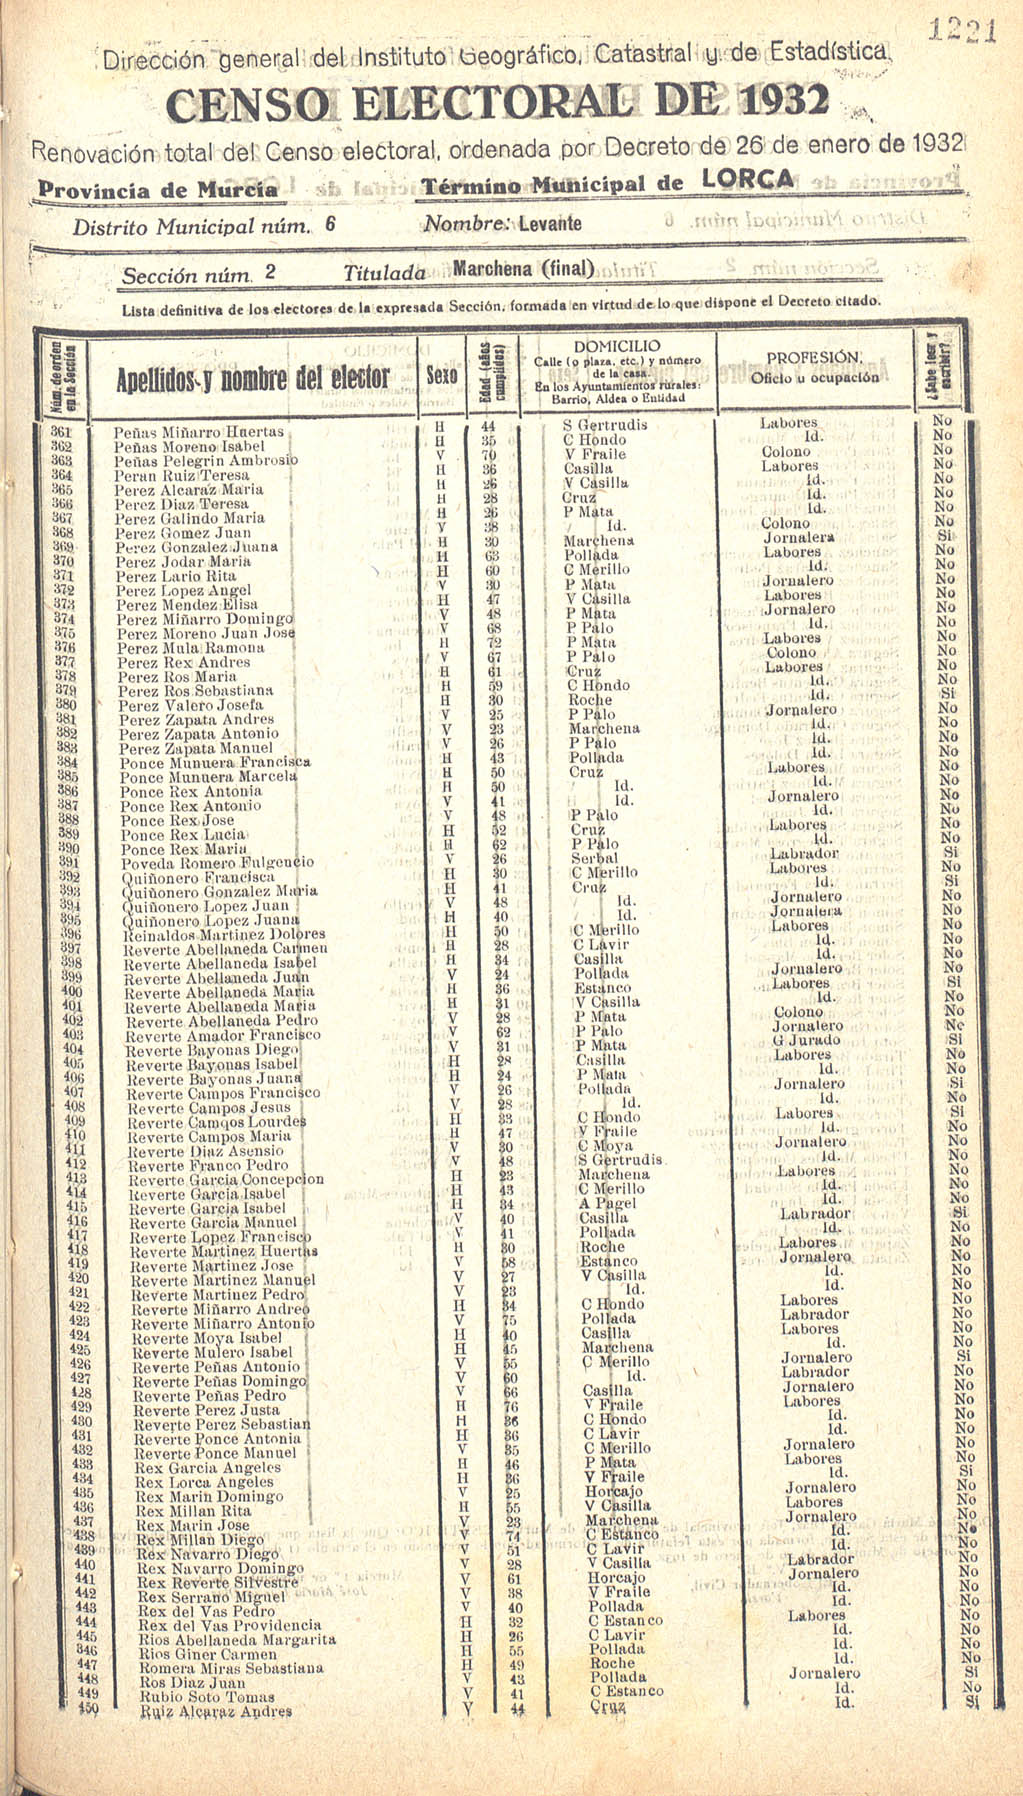 Censo electoral provincial de 1932. Listas definitivas de Lorca, formadas en virtud del Decreto de 26 de enero de 1932.